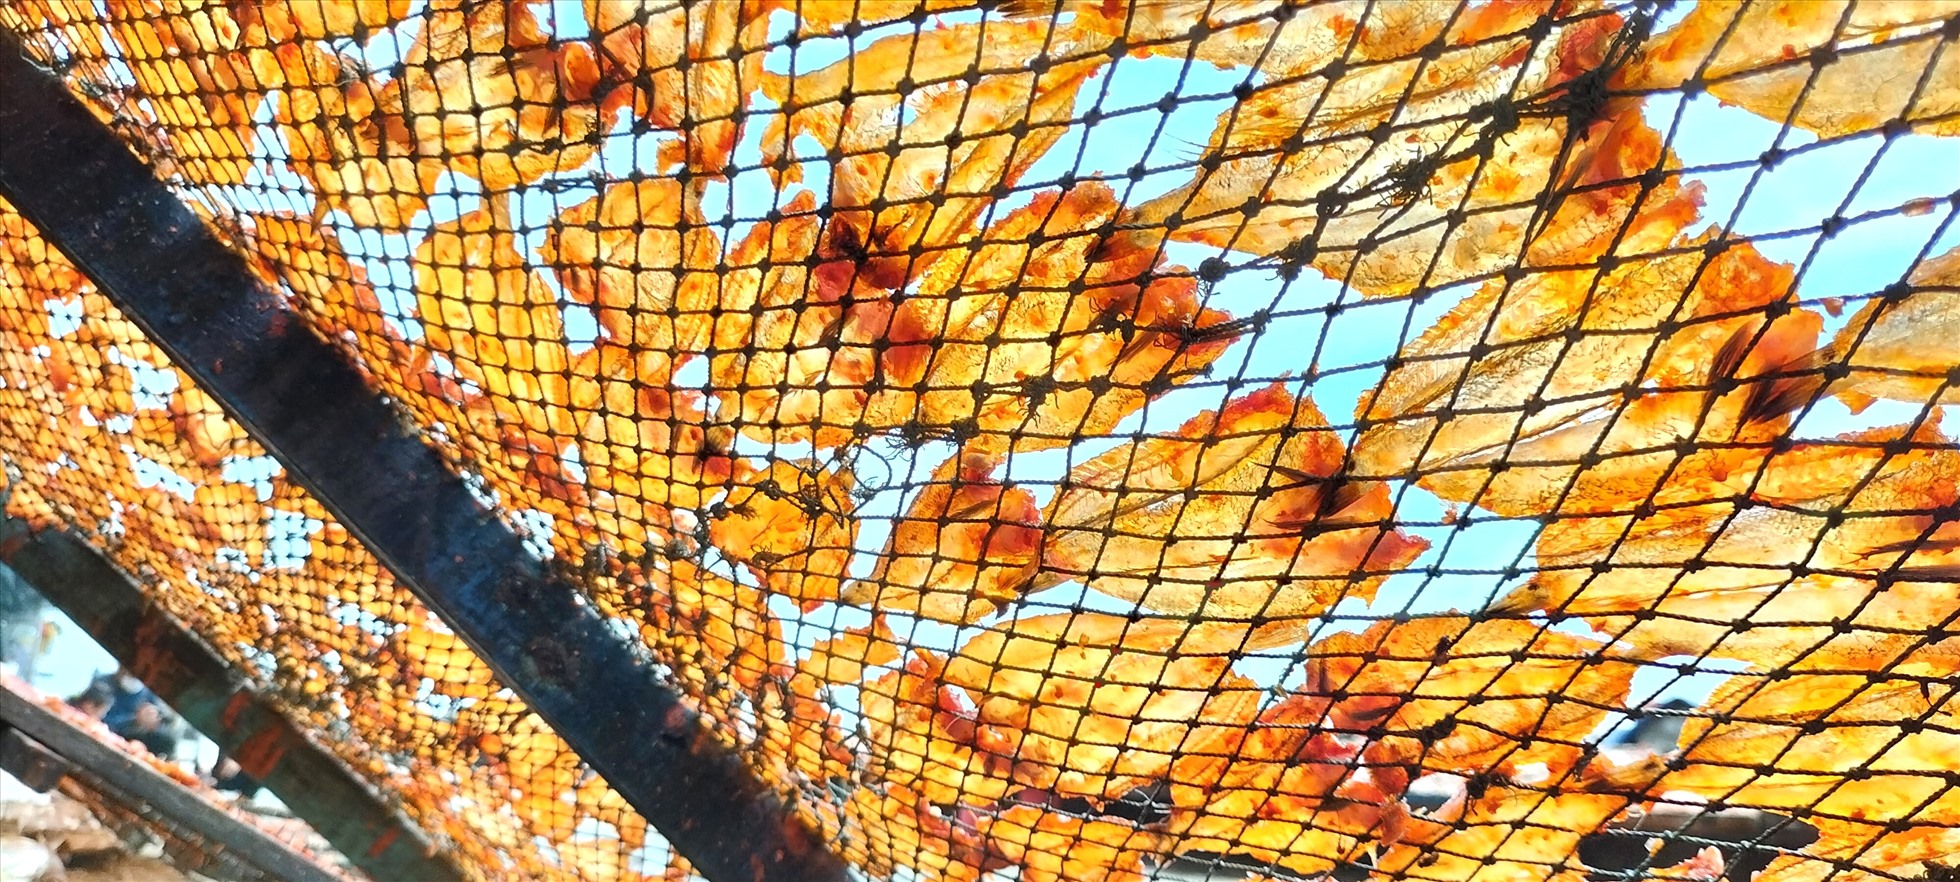 Khô cá lưỡi trâu được phơi bằng nắng và gió biển mang hương vị rất ngon, đảm bảo chất lượng được người dân quan tâm sử dụng.